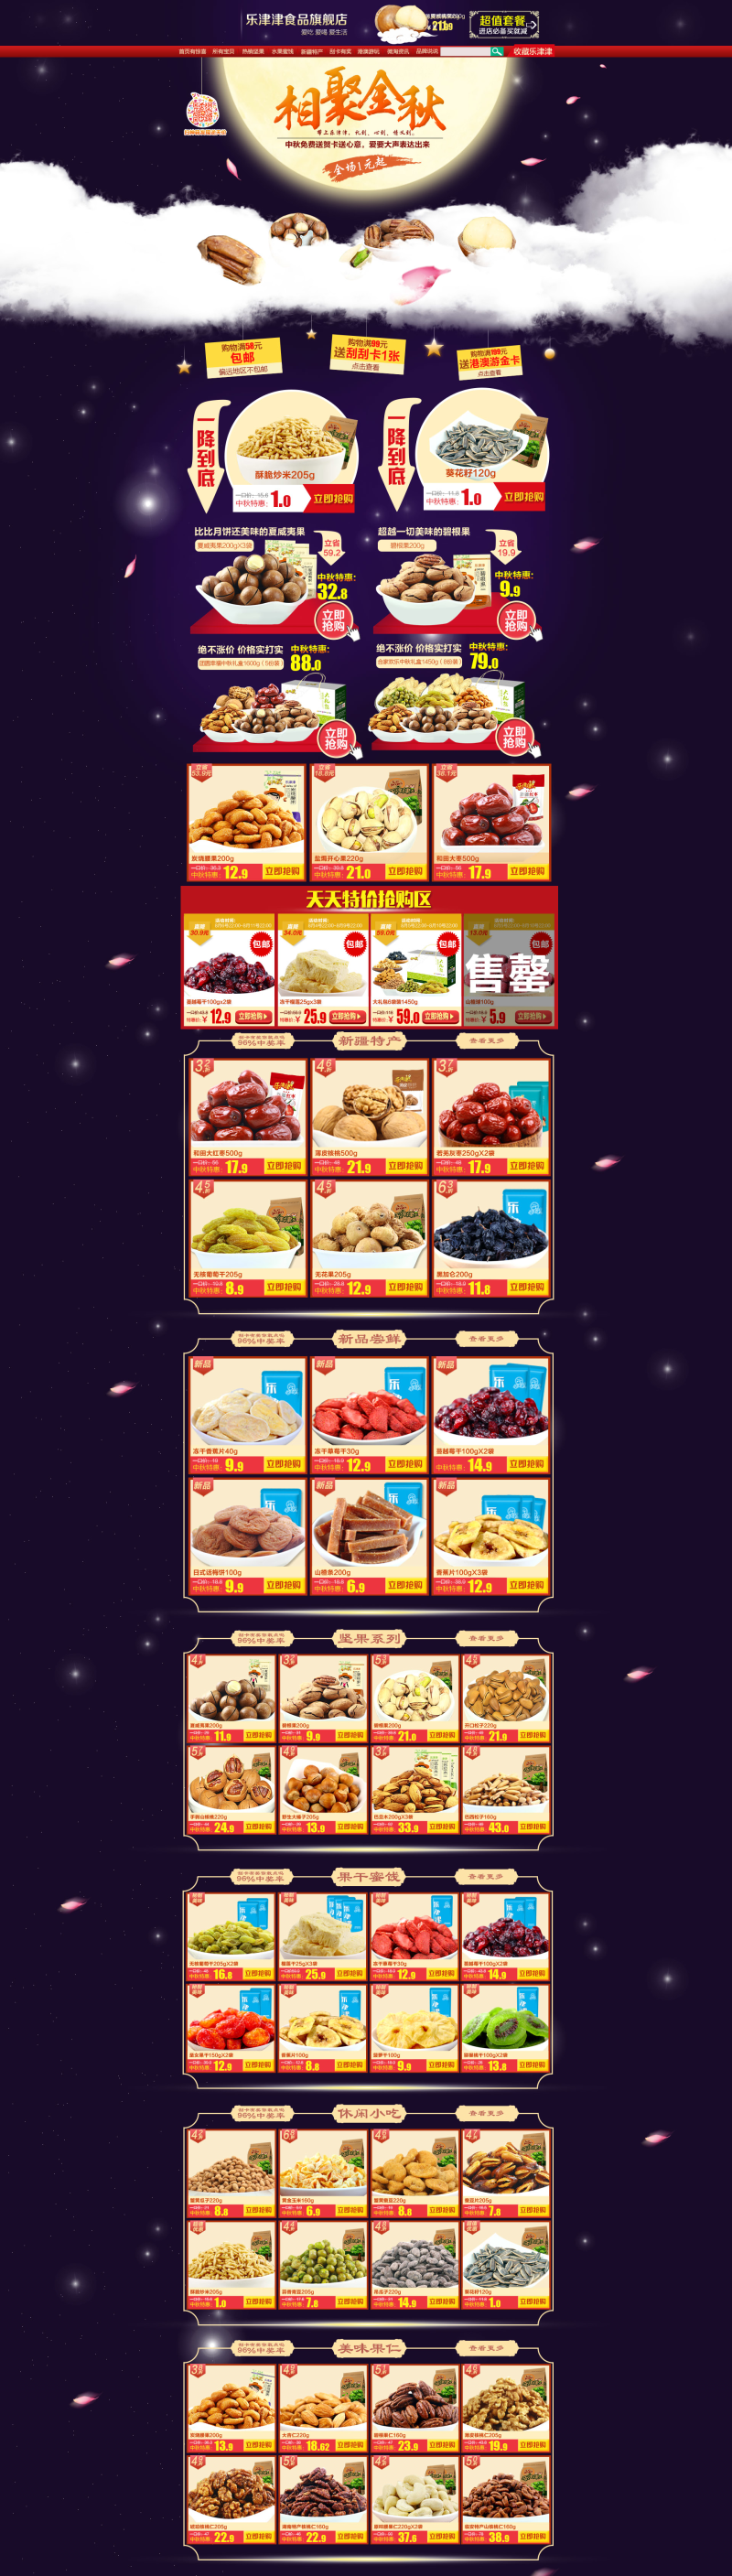 天猫食品页面图片